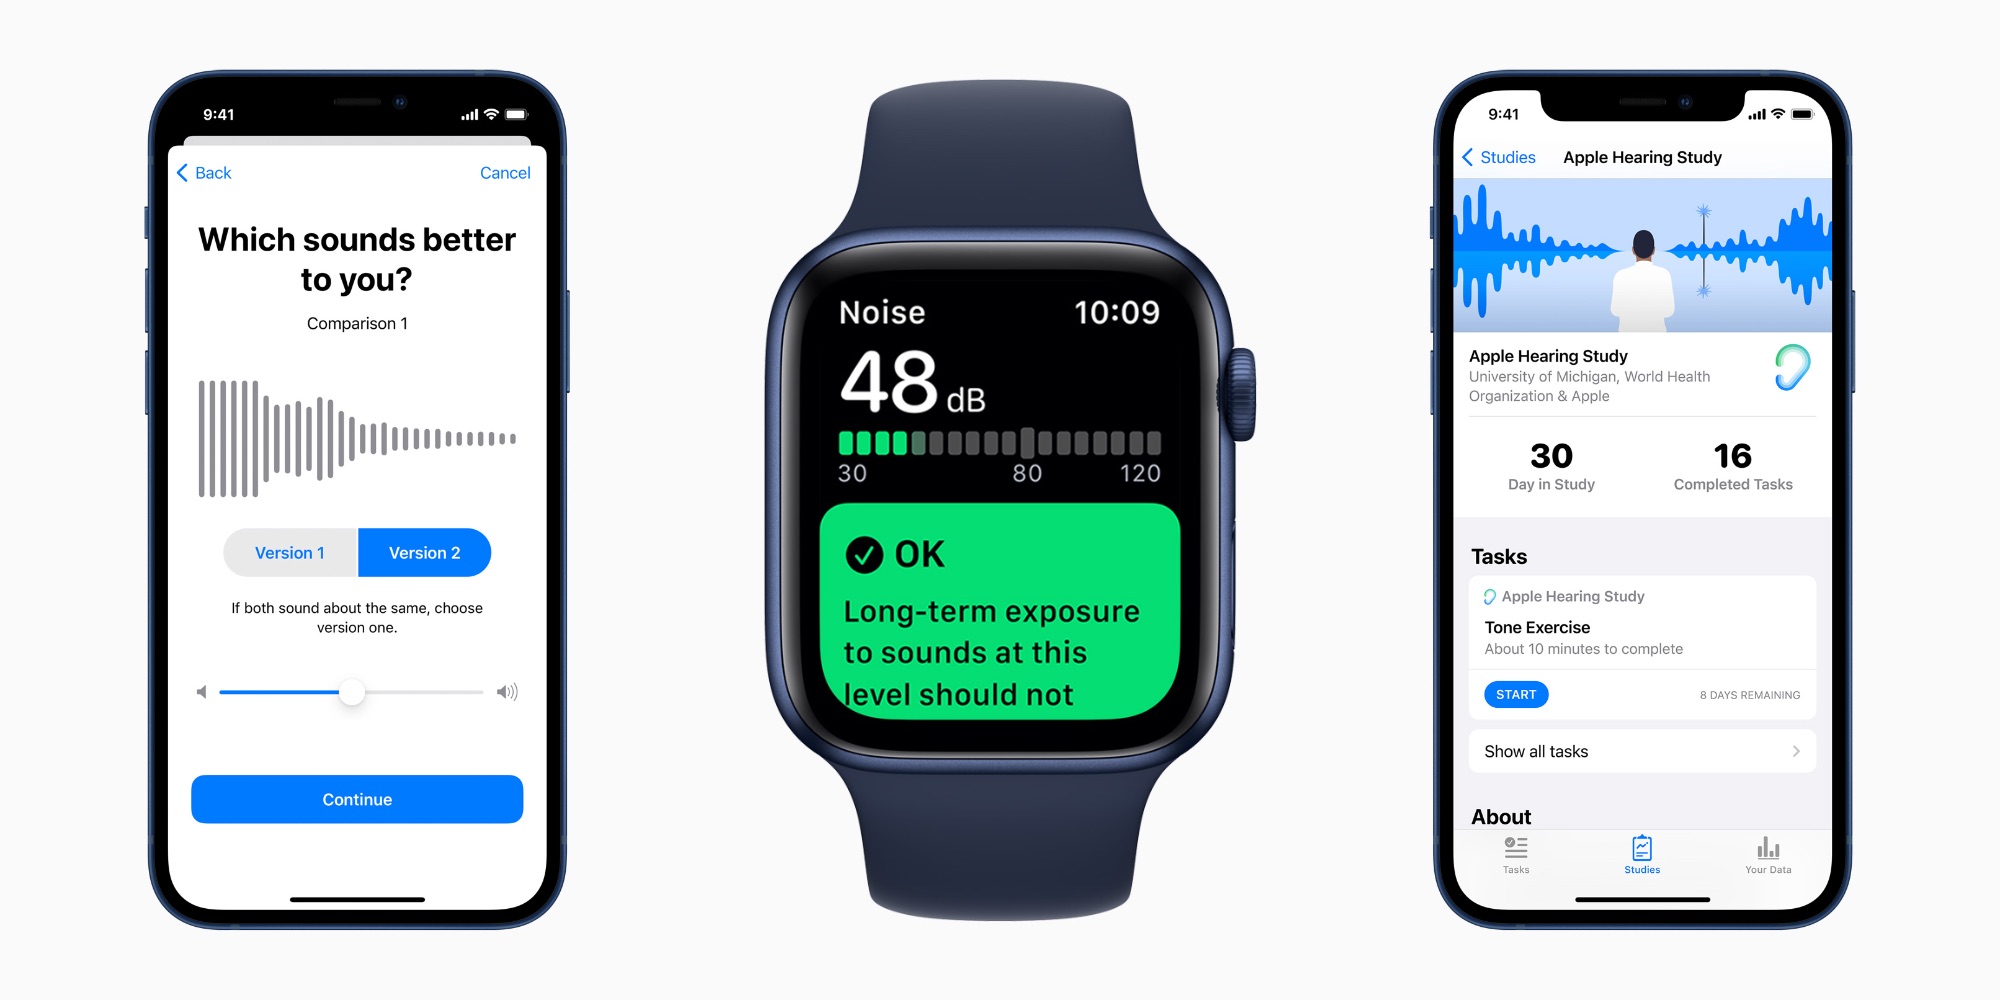 Apple comparte actualizaciones sobre su estudio de audición con datos de iPhone y Apple Watch